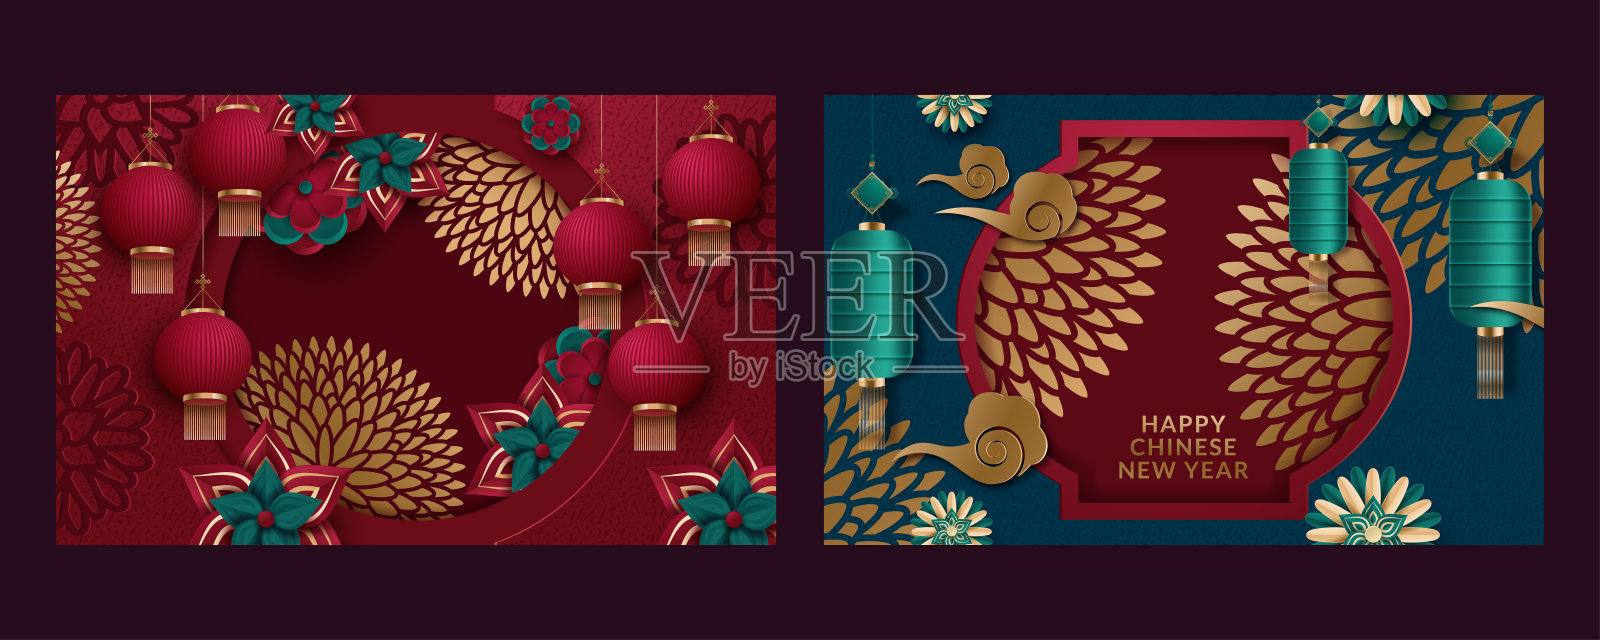 以2020年中国新年为背景的系列海报。翻译:新年快乐。矢量图设计模板素材